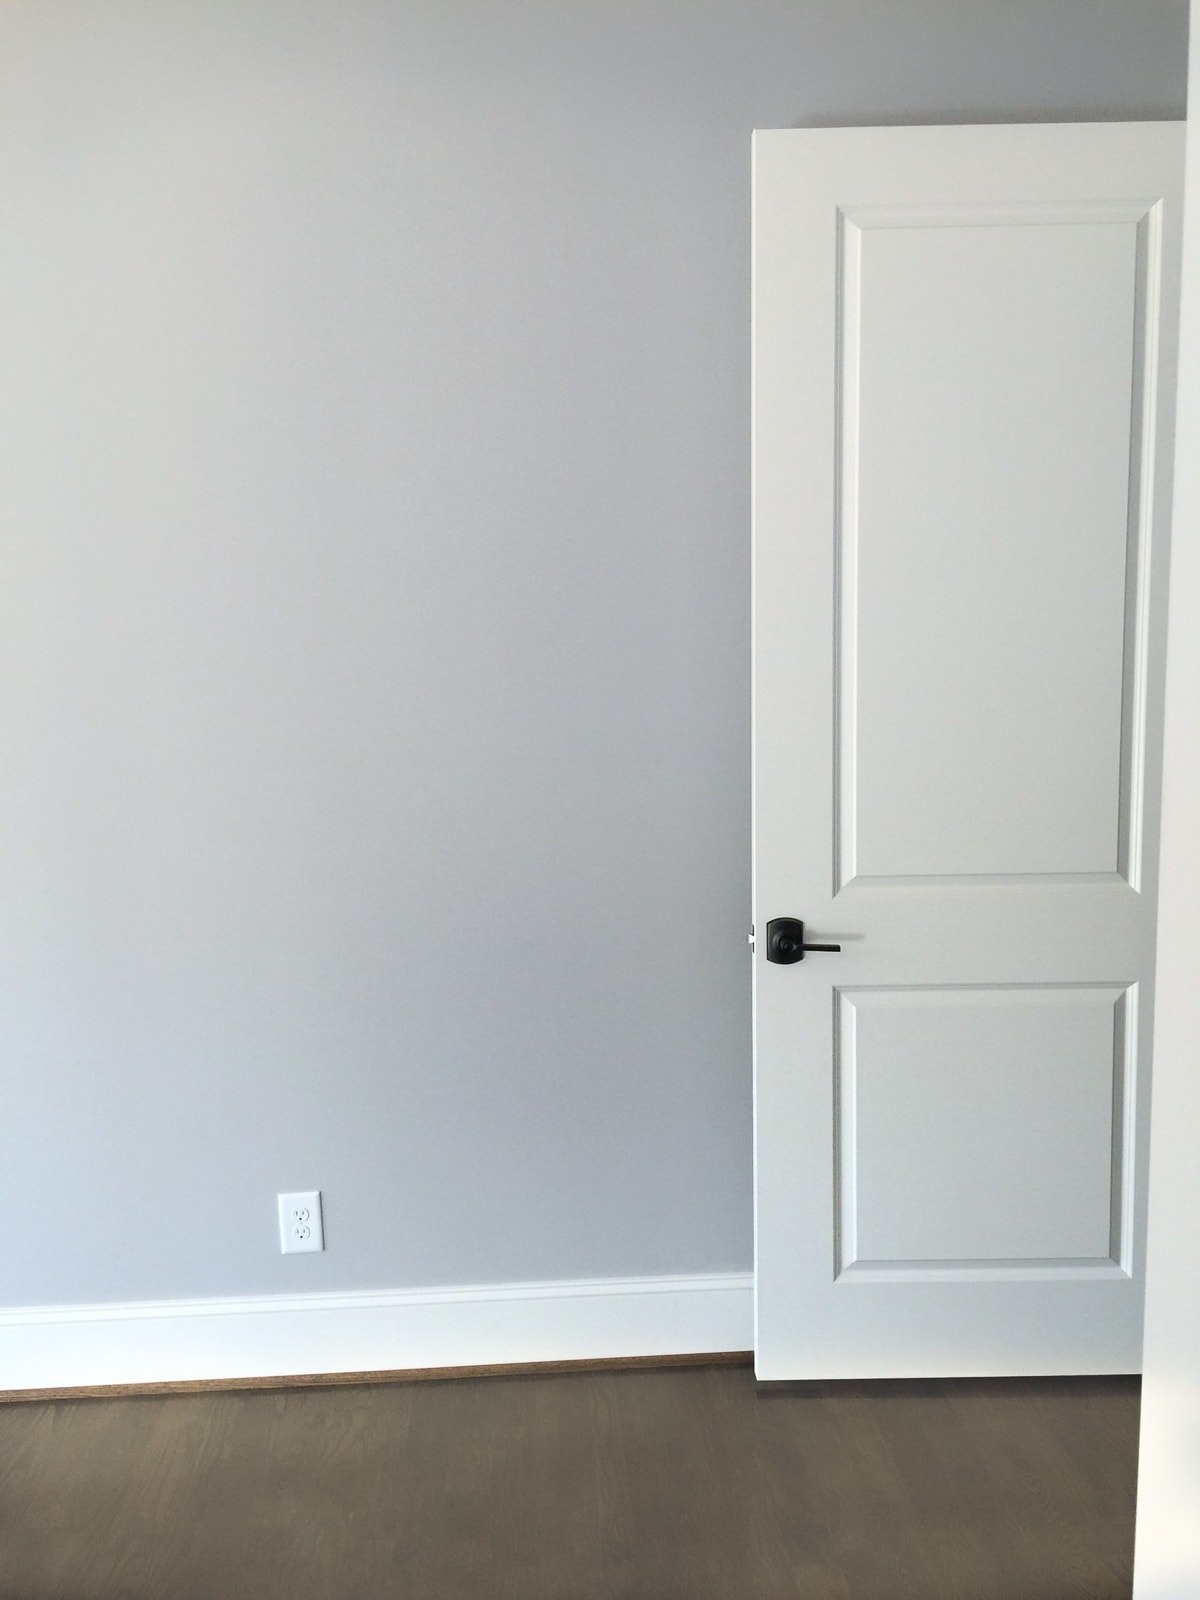 alabaster door and trim with gray walls